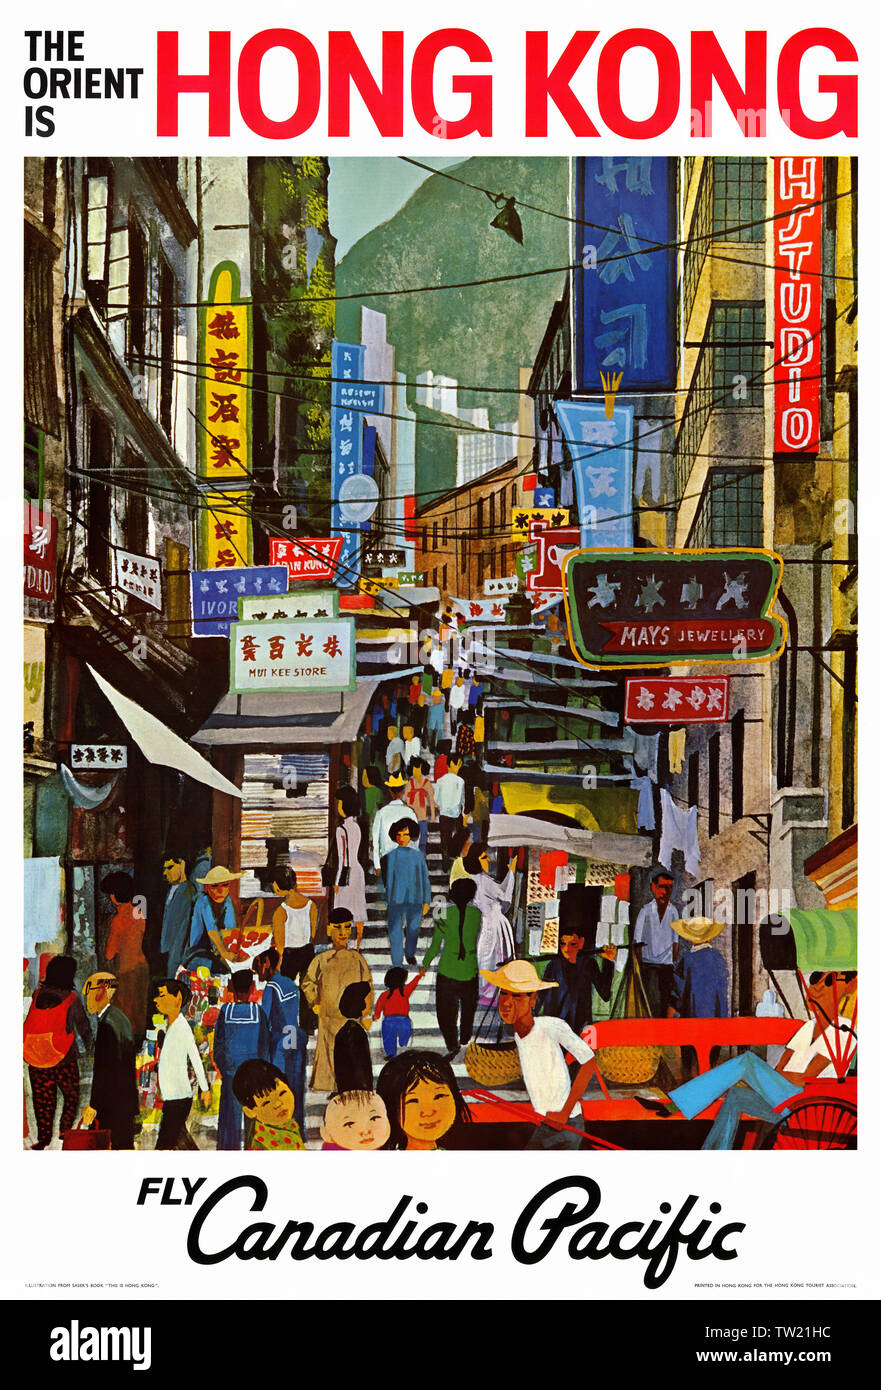 Restauriertes Vintage-Reisesoster. Der Orient ist Hong Kong Fly Canadian Pacific. Veröffentlicht im Jahr 1960. Stockfoto